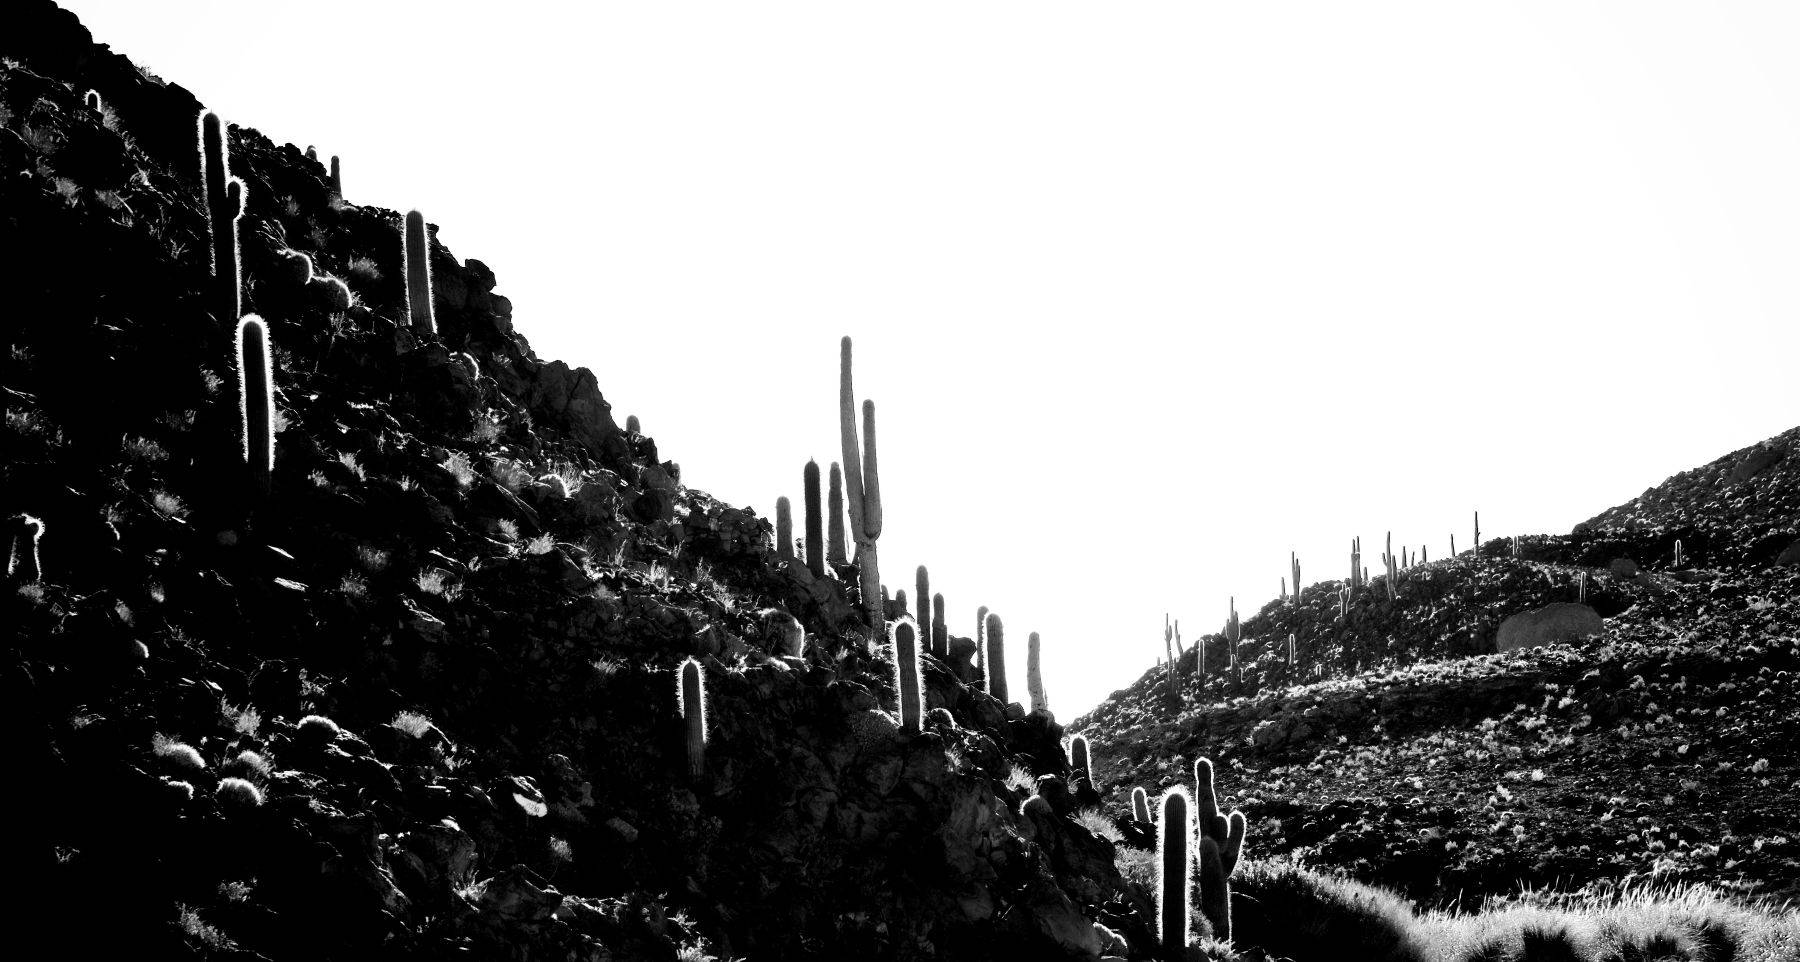 Cactus Forest Atacama Desert, Chile